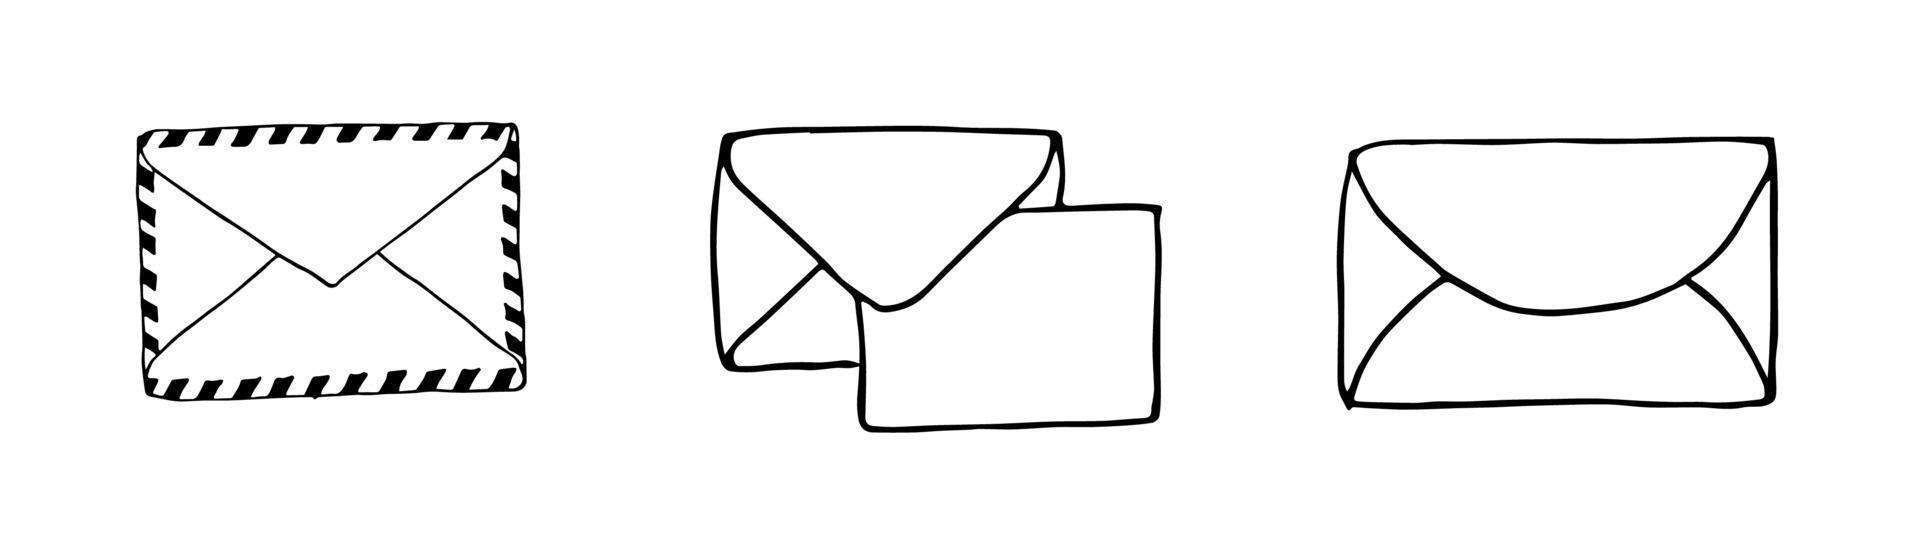 Envelope Sketch Vector Images (over 5,000)